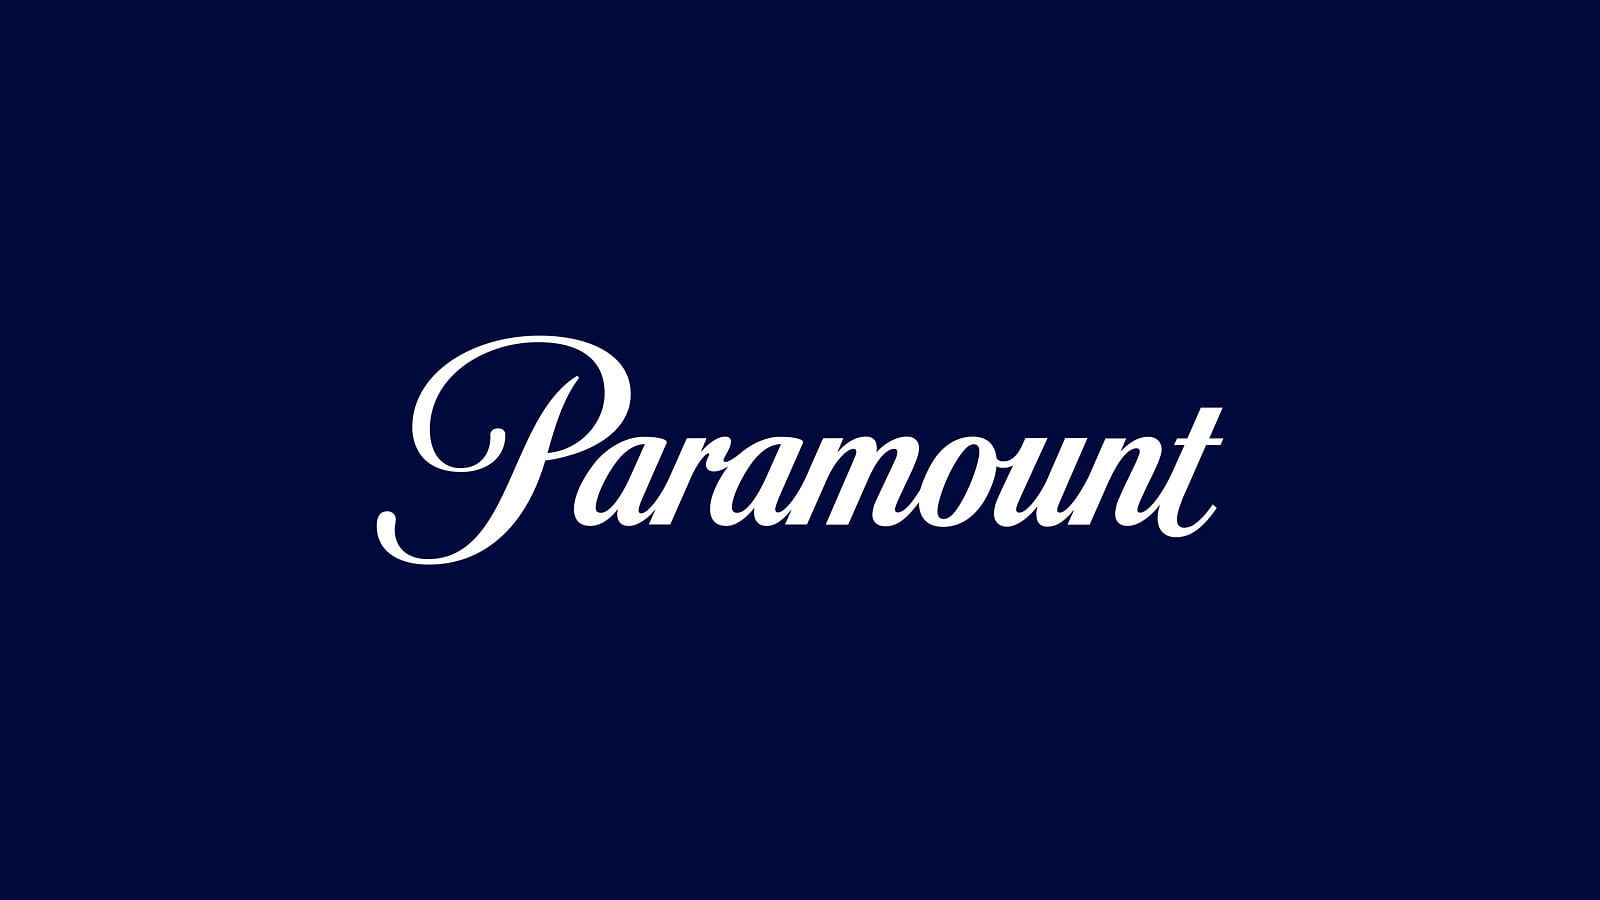 <div class="paragraphs"><p>The Paramount logo.</p></div>